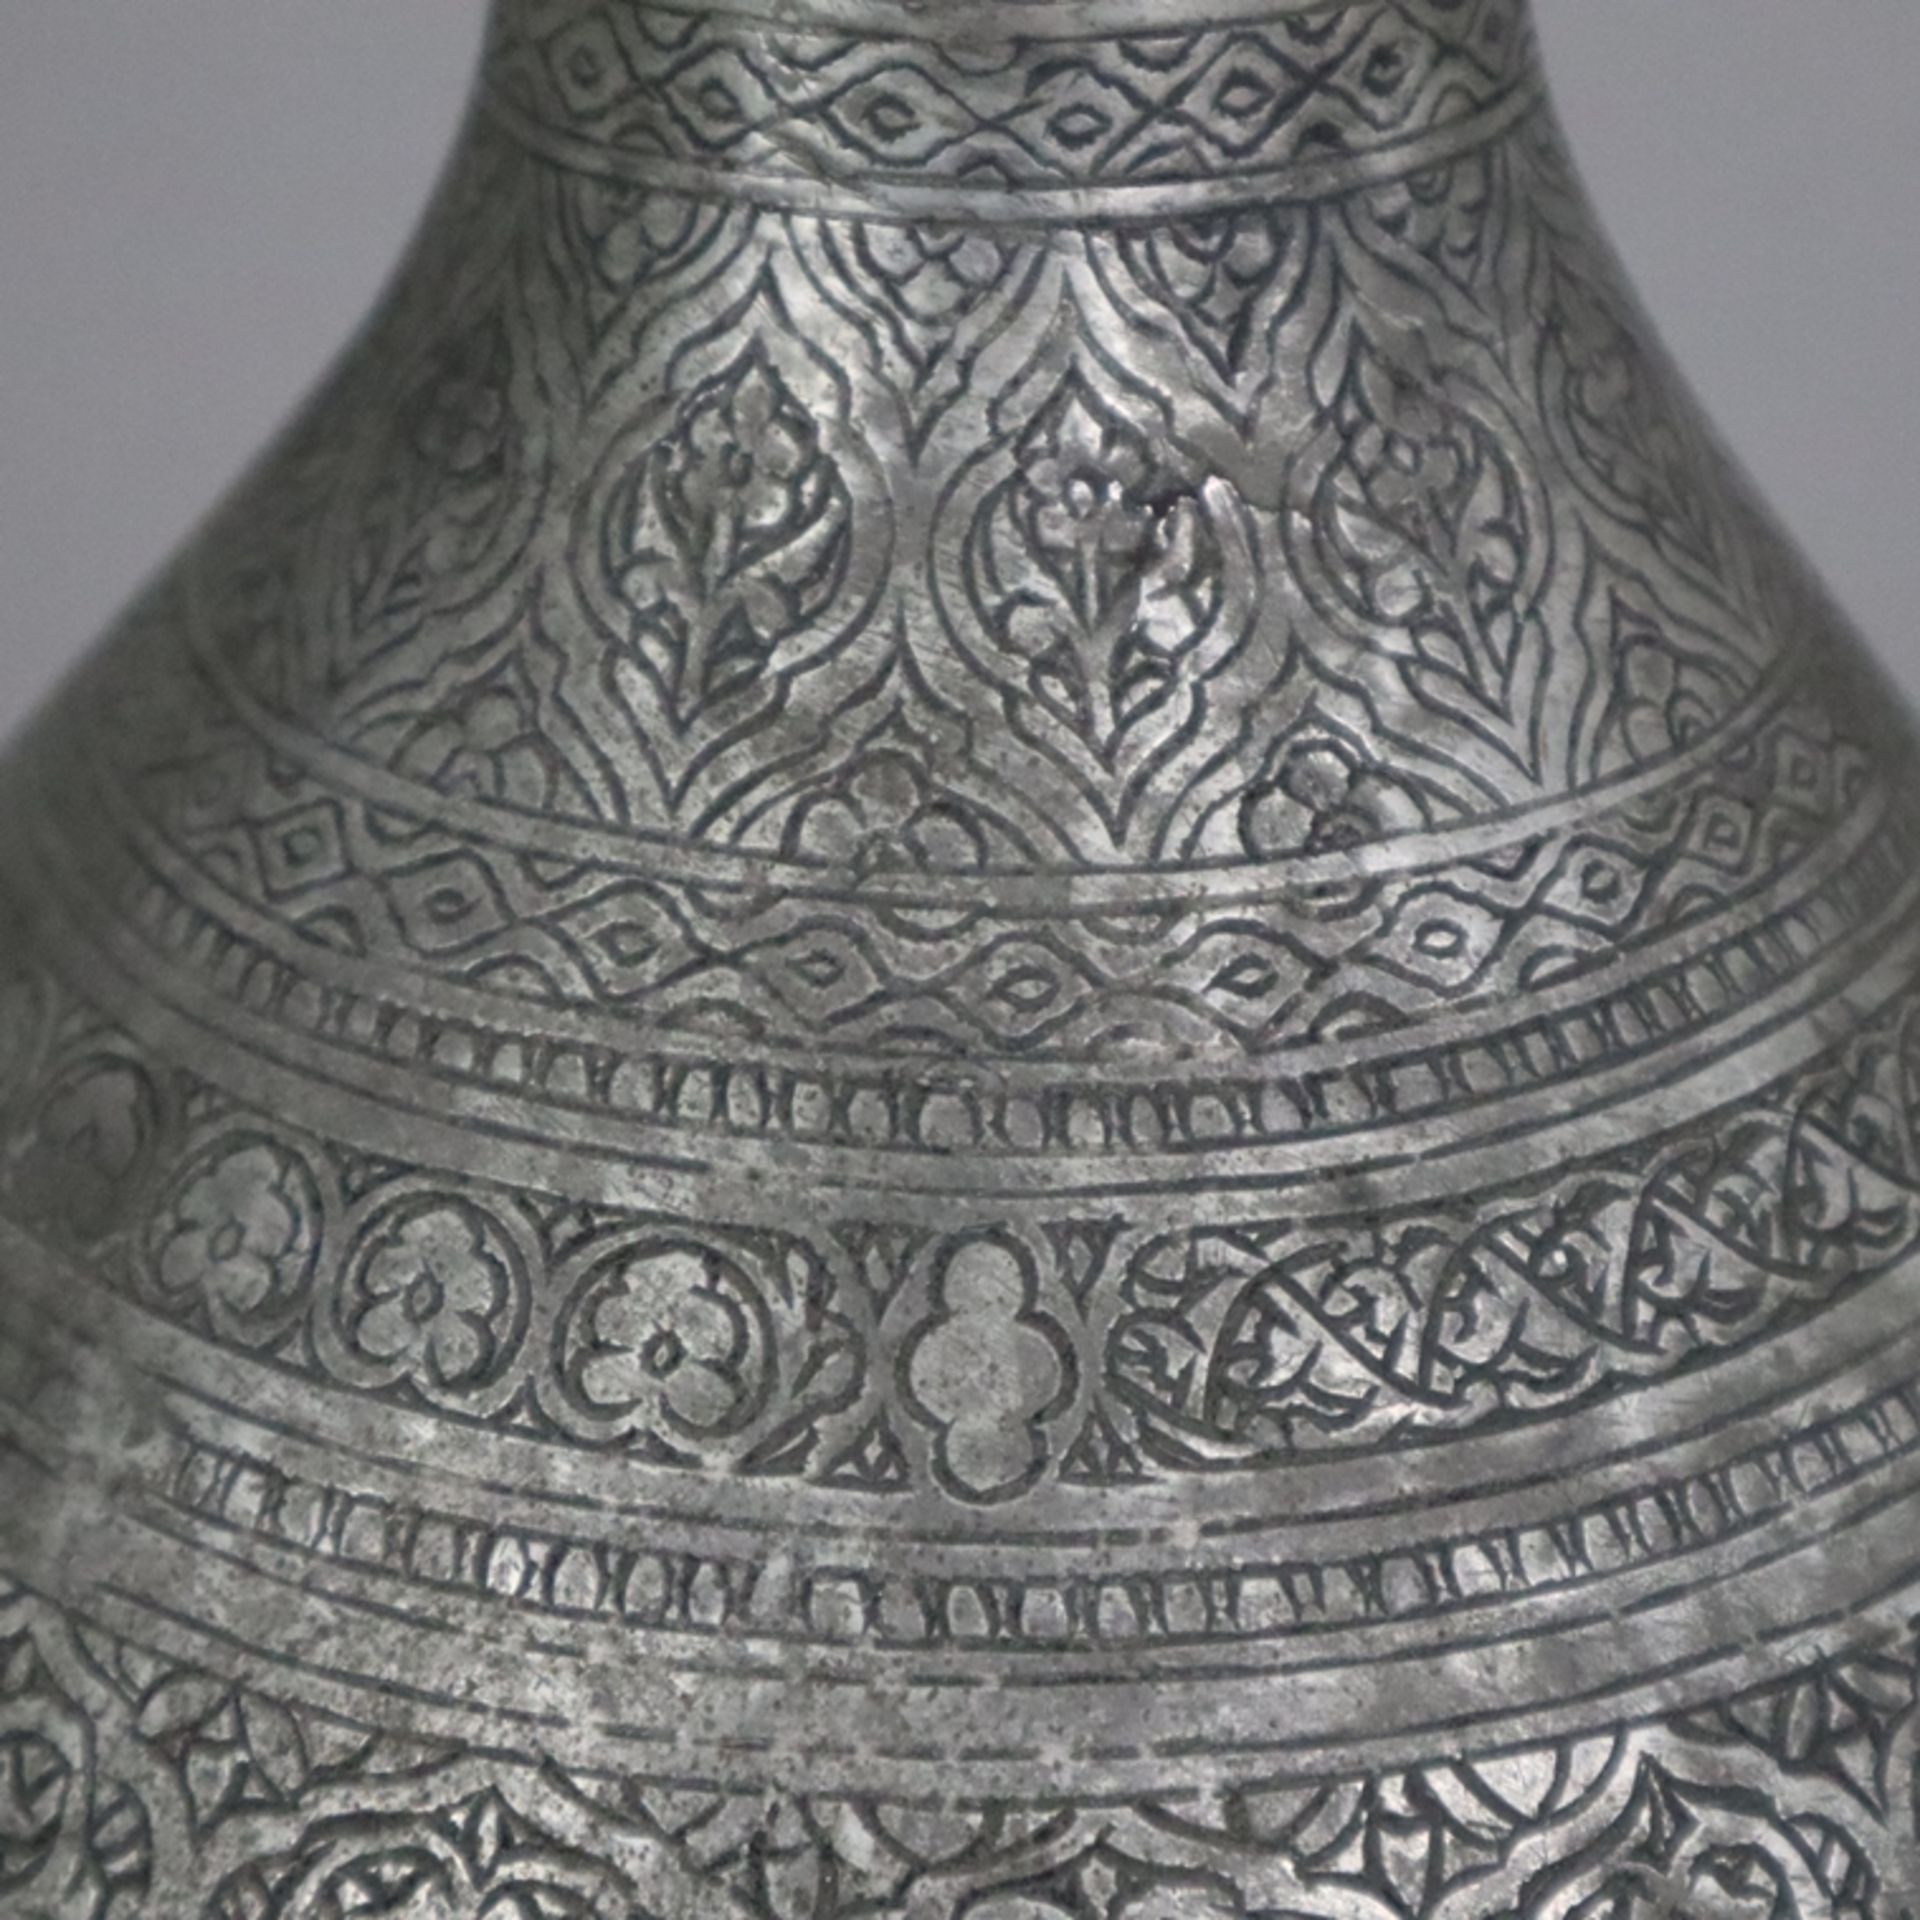 Vase - indopersisch, Kupfer versilbert / verzinnt?, birnförmige Vasenform am Hals durch Ringe gegli - Bild 5 aus 9